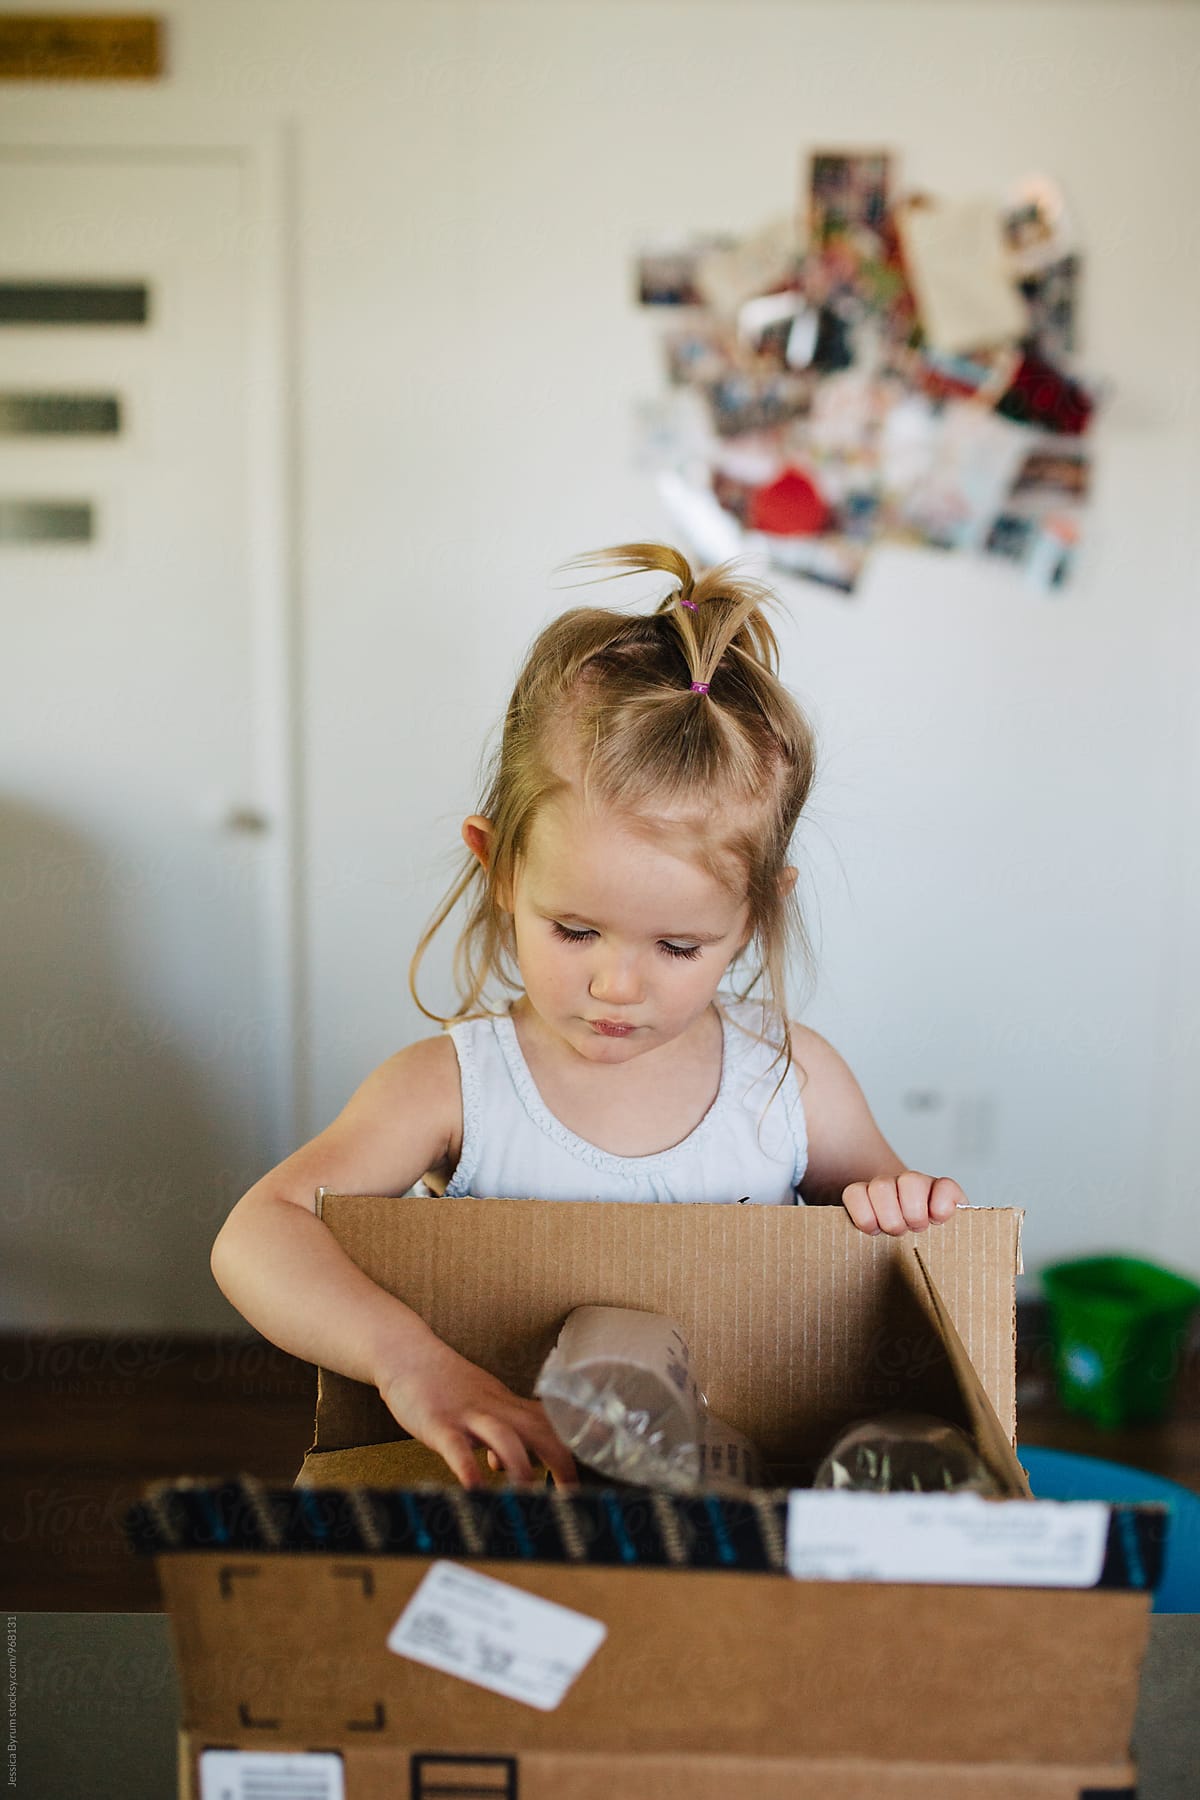 Toddler girl opening box